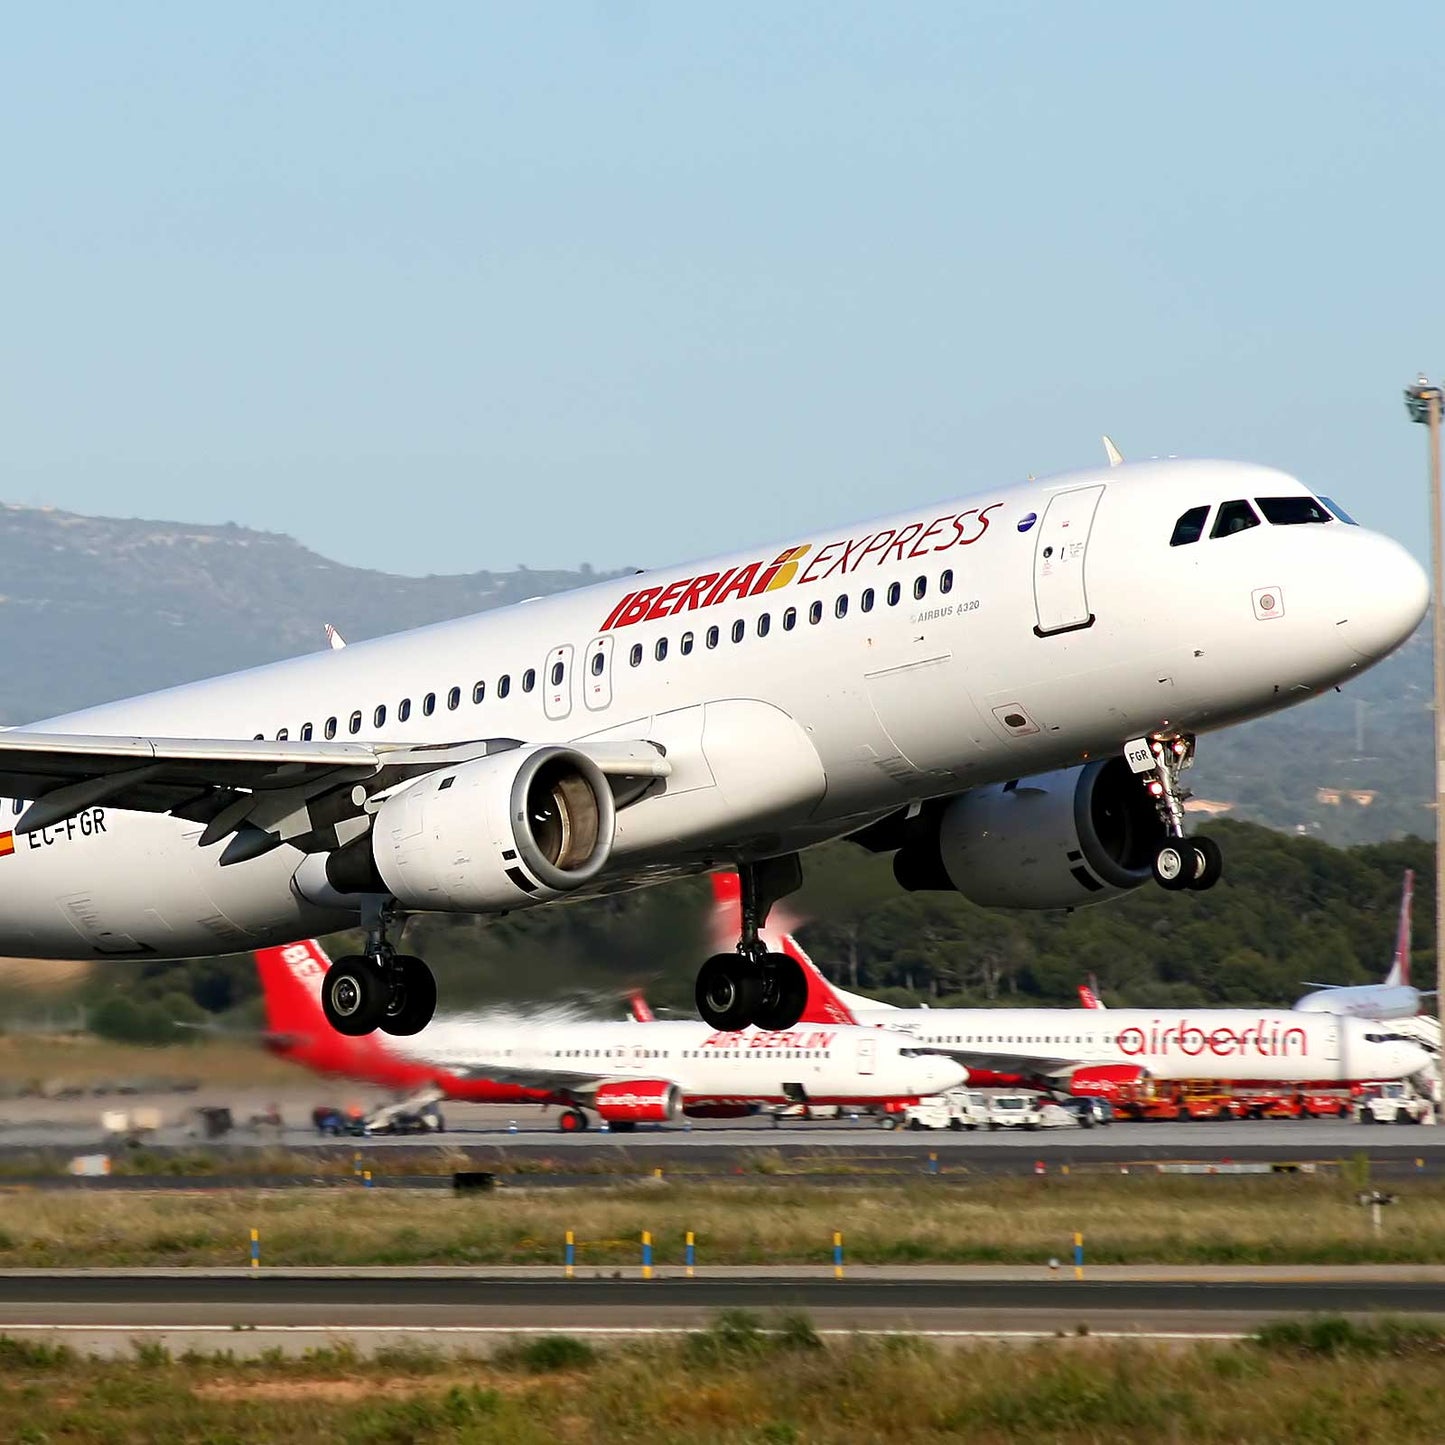 Aviationtag Iberia A320 - EC-FGR